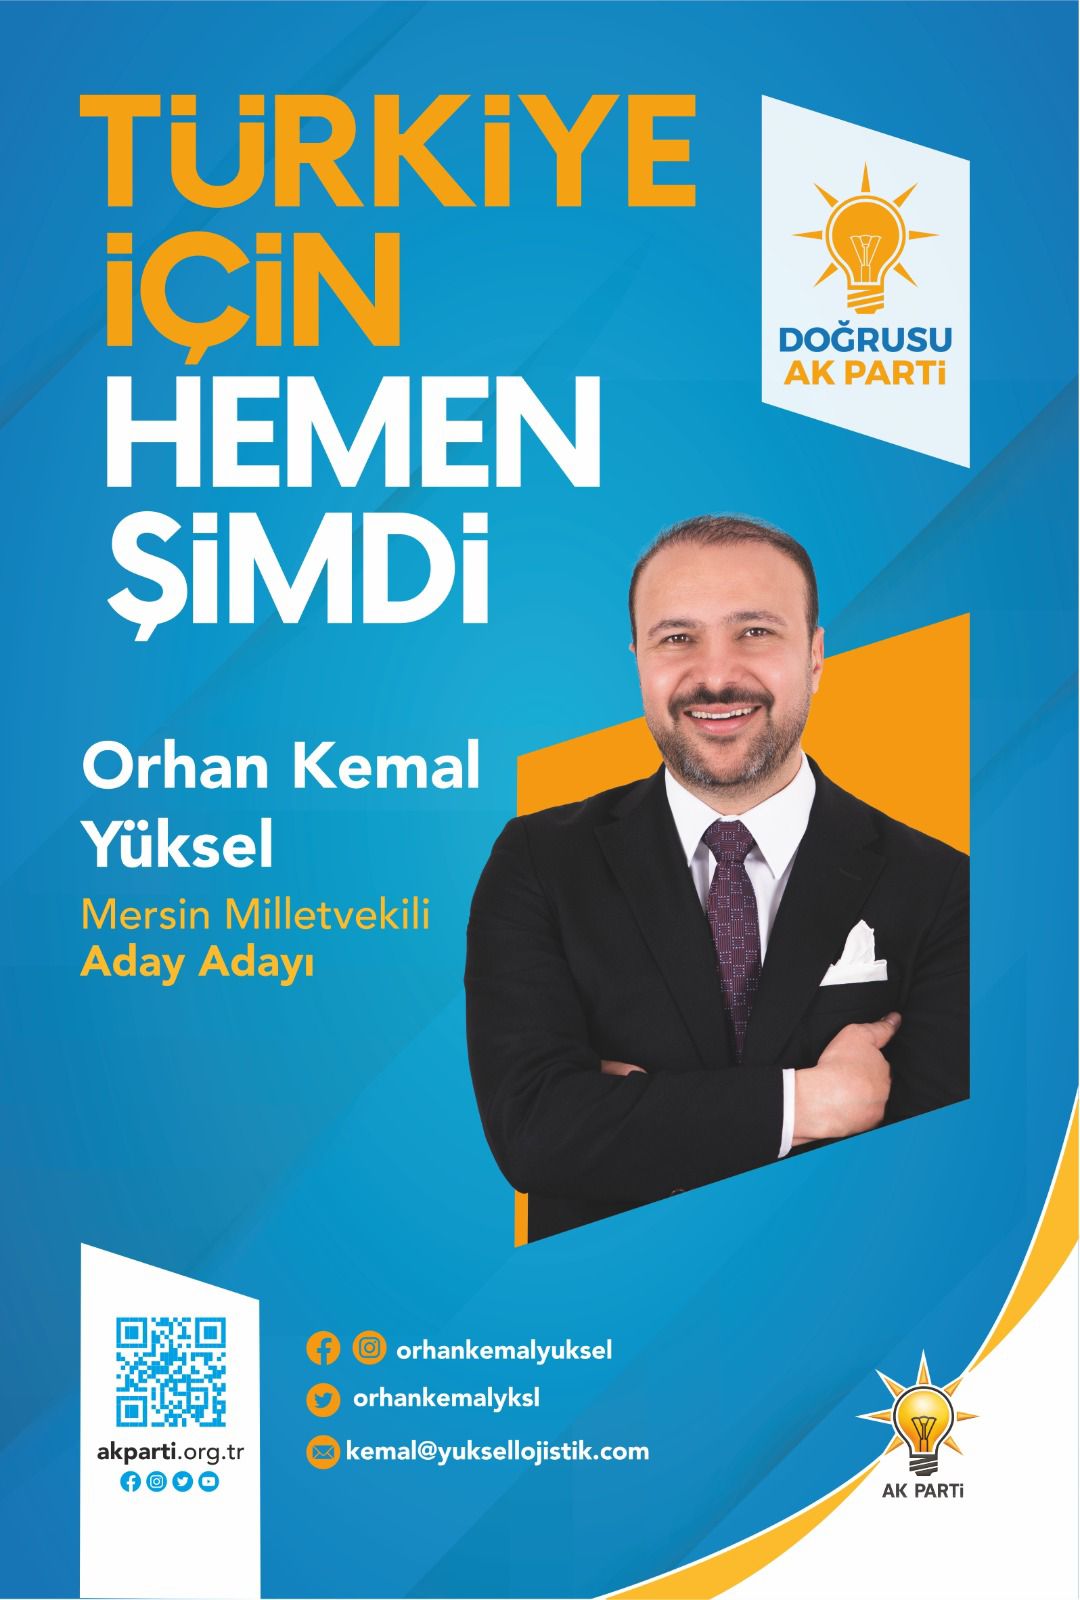 Orhan Kemal Yüksel'in aday adaylığı başvurusu gerçekleştirildi.